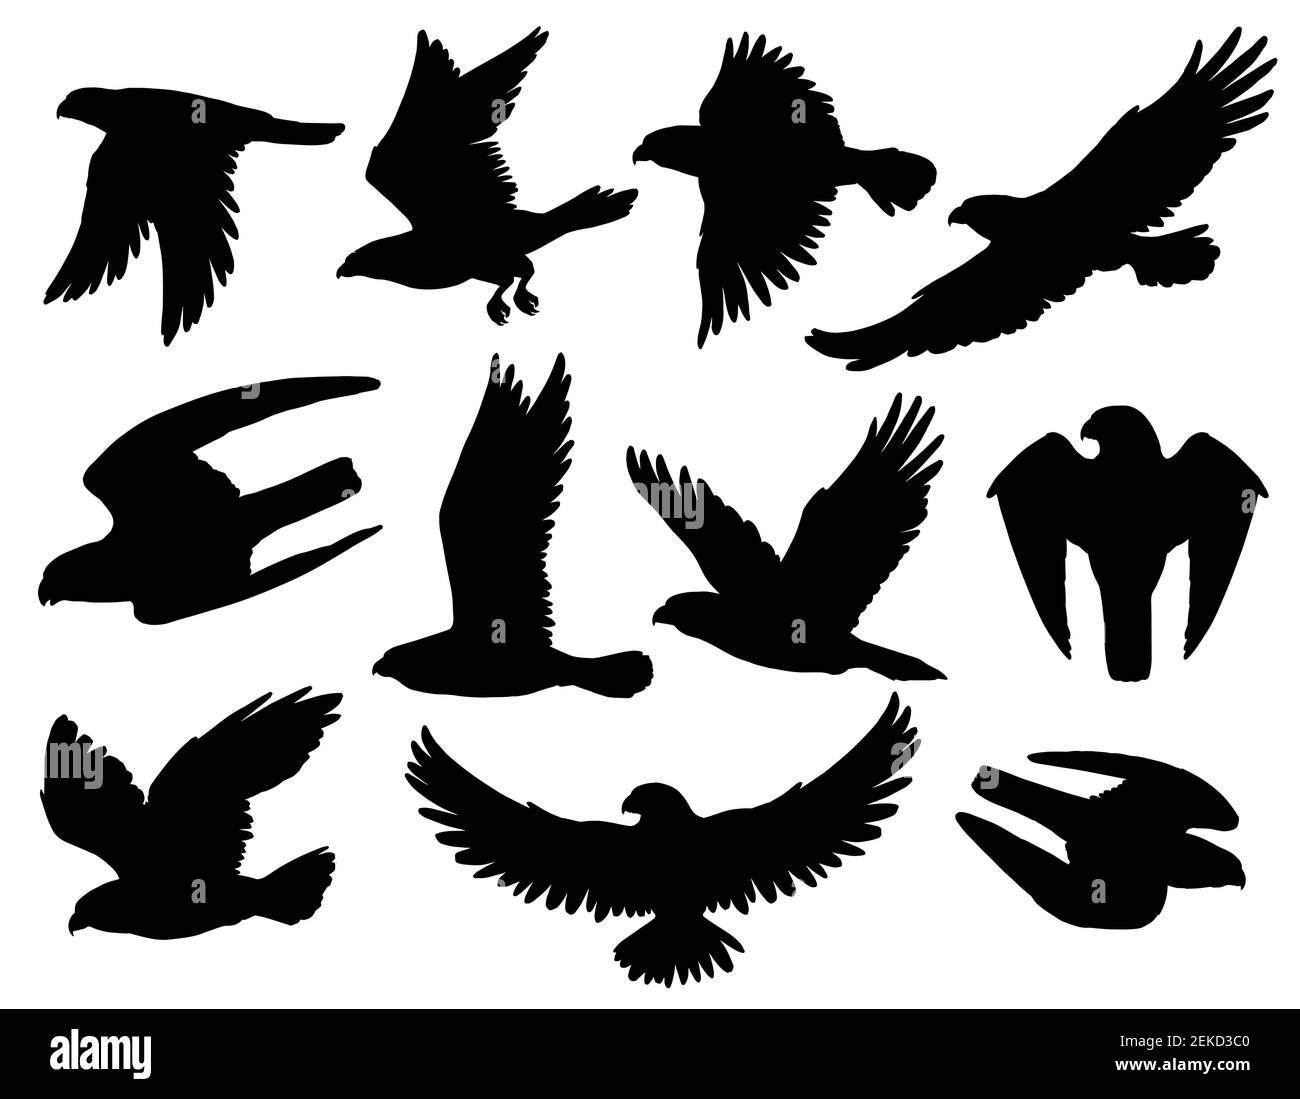 Silhouette nere di aquila, falco e falco con uccelli rapaci volanti e cacciatori. Animali araldici con ali spalmabili e artigli attaccanti, patri americani Illustrazione Vettoriale